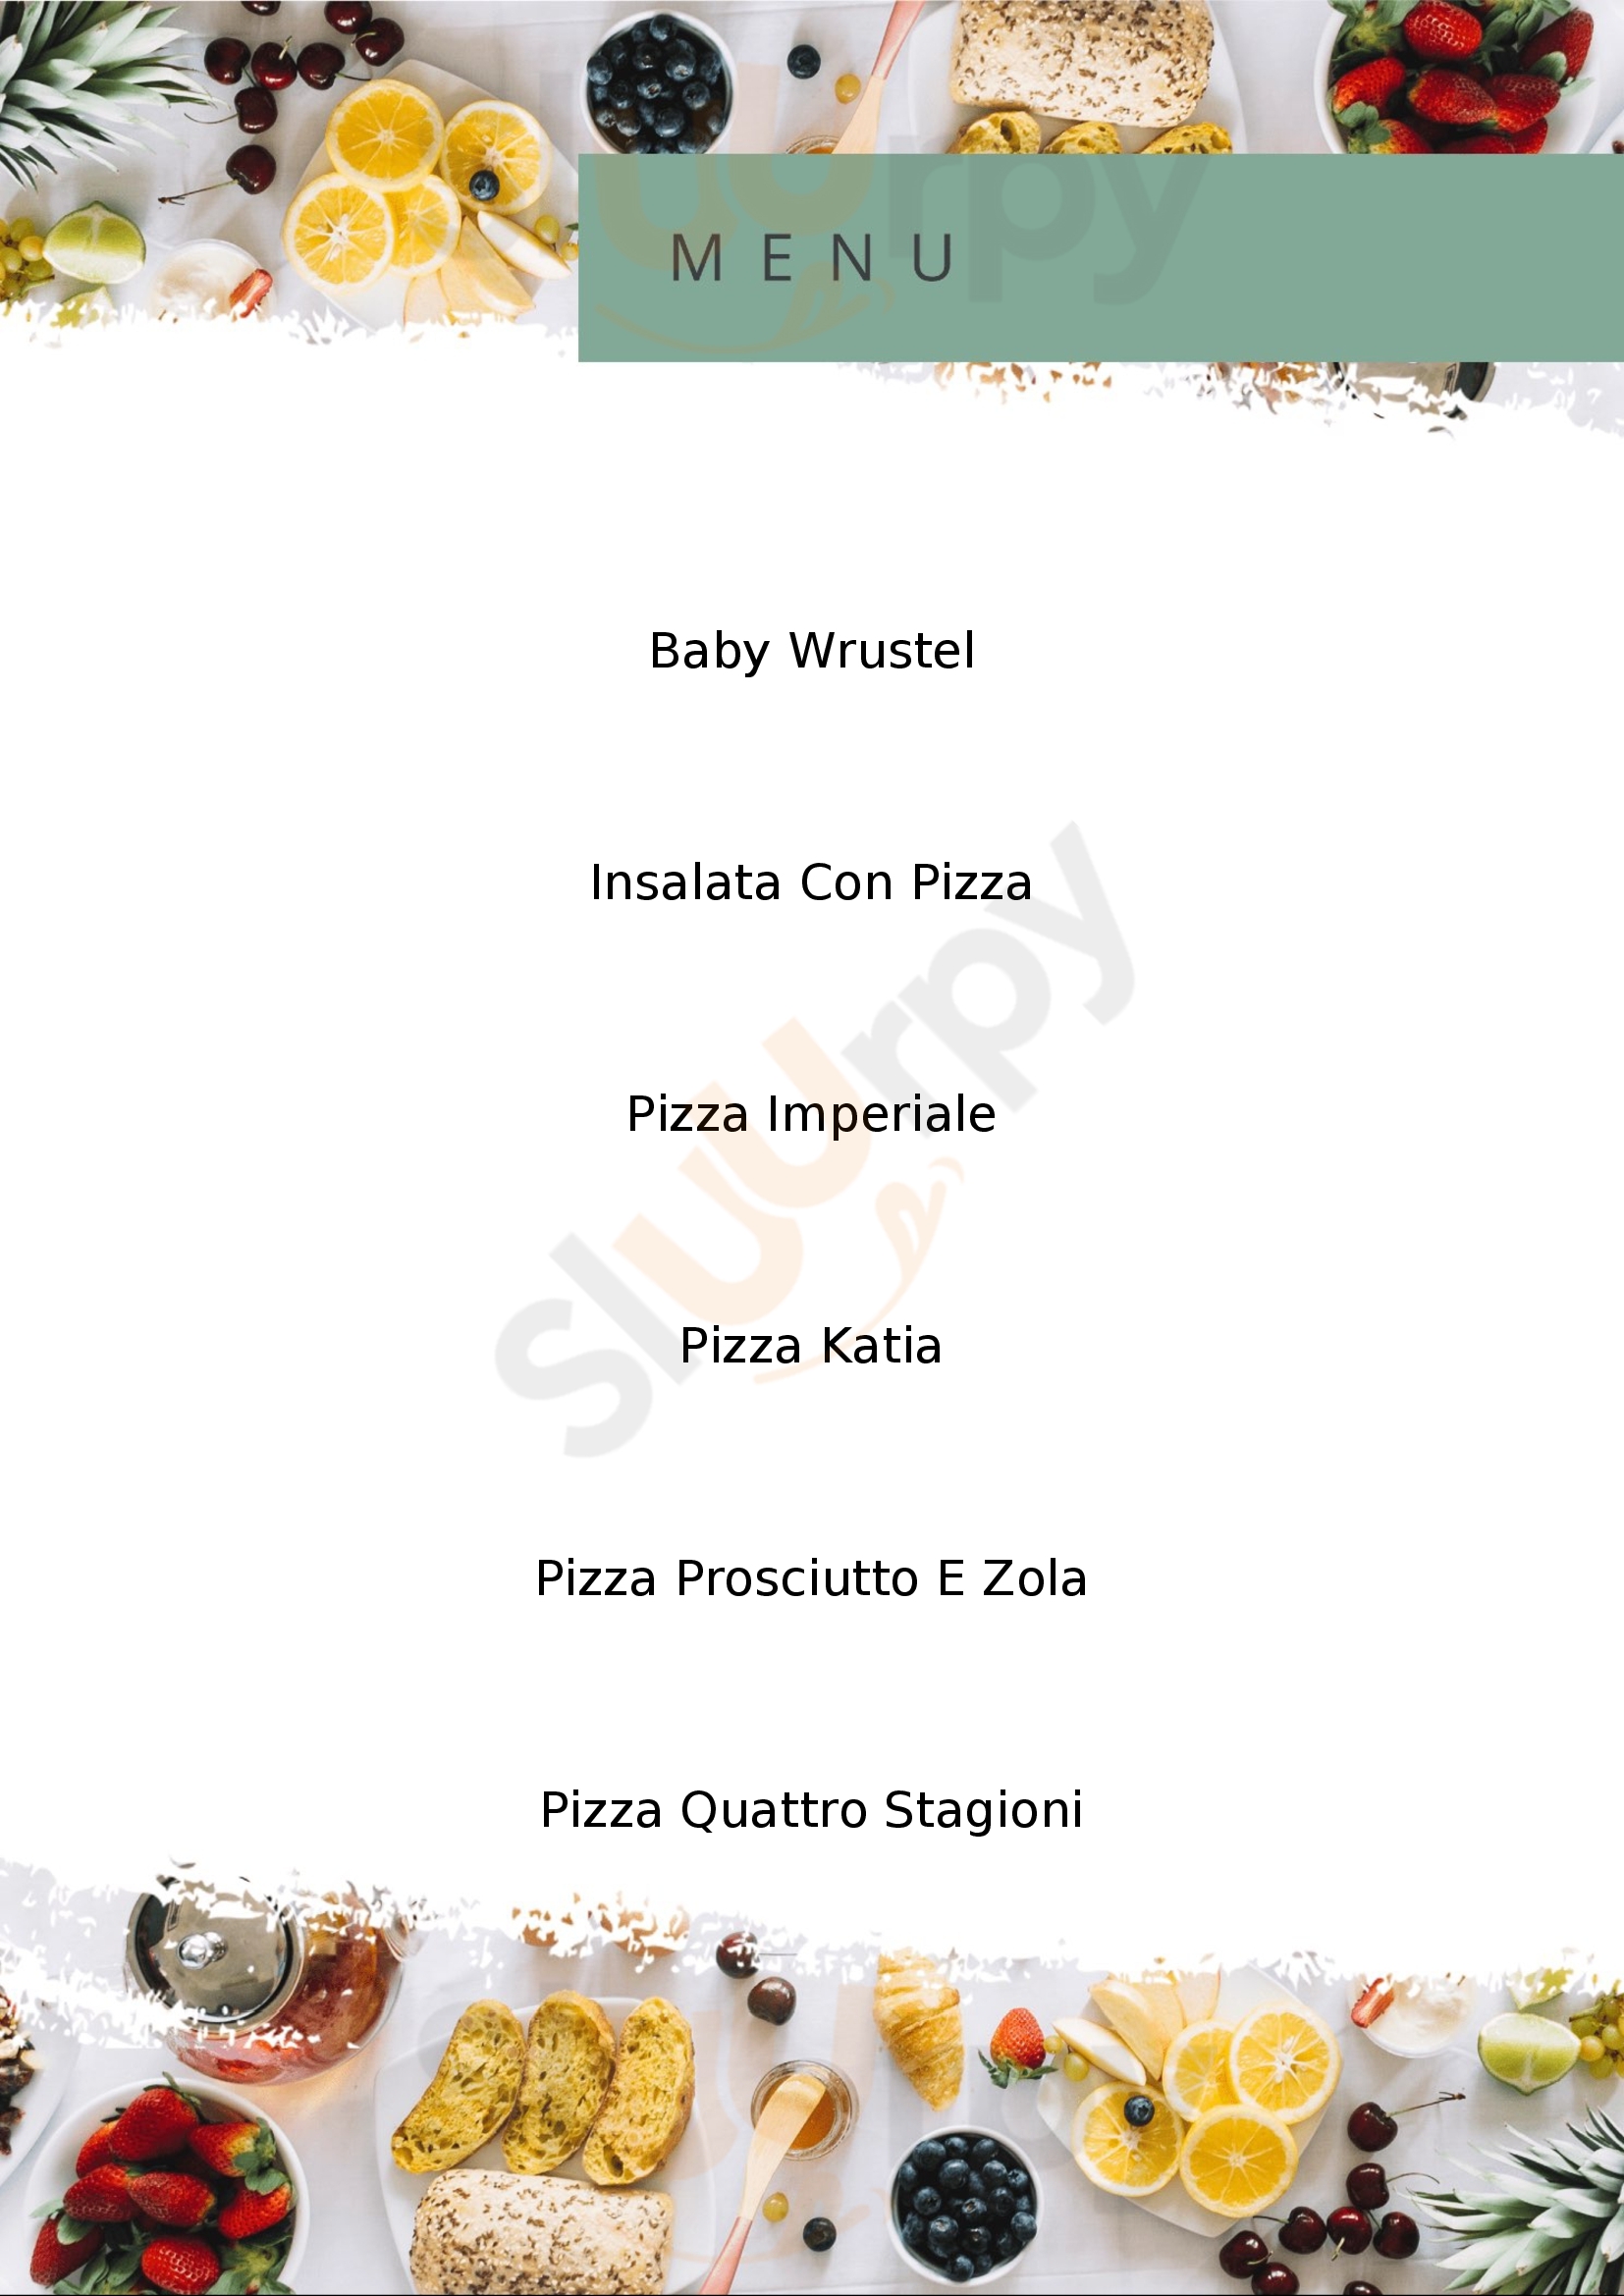 La Brace - Ristorante Pizzeria Rivanazzano Terme menù 1 pagina